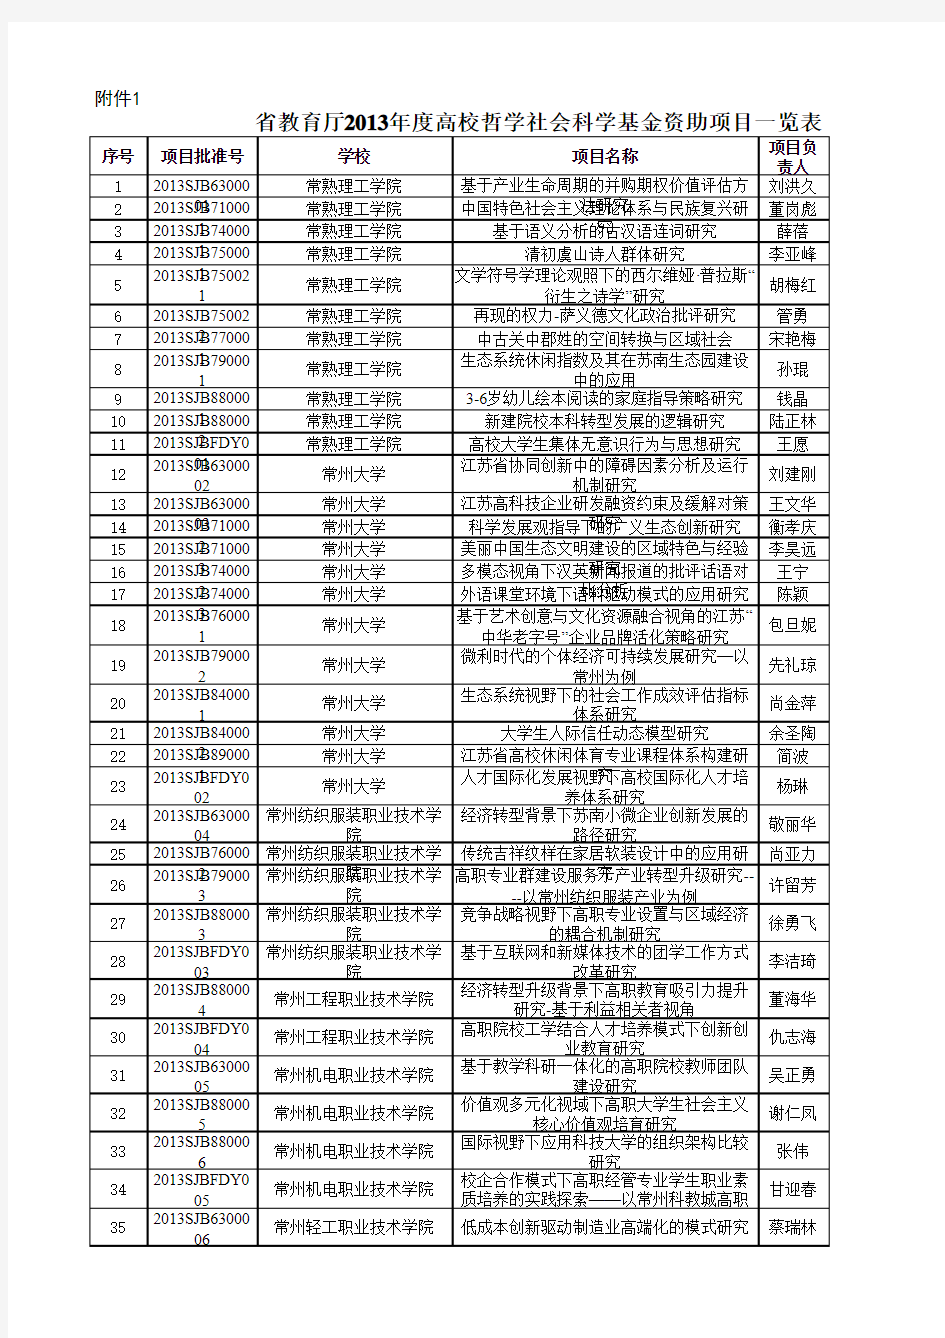 江苏省教育厅2013年度高校哲学社会科学基金资助项目一览表